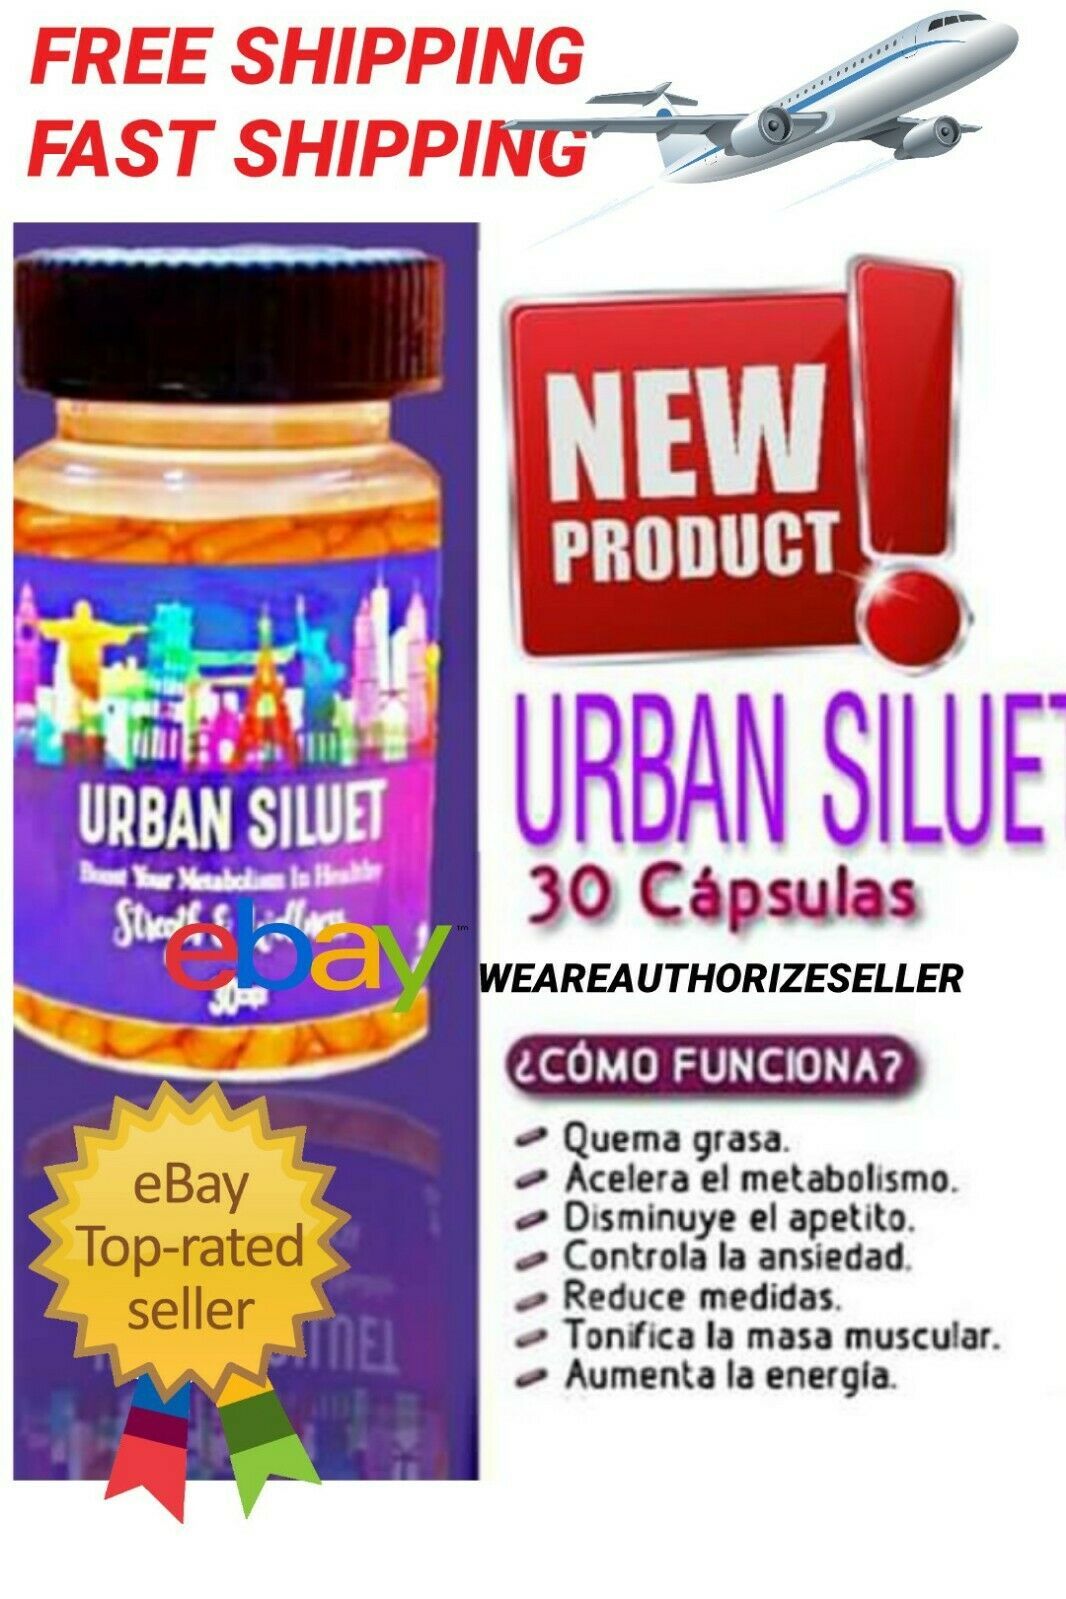 Urban Siluet pastillas para bajar de peso producto nuevo de 365 Skinny